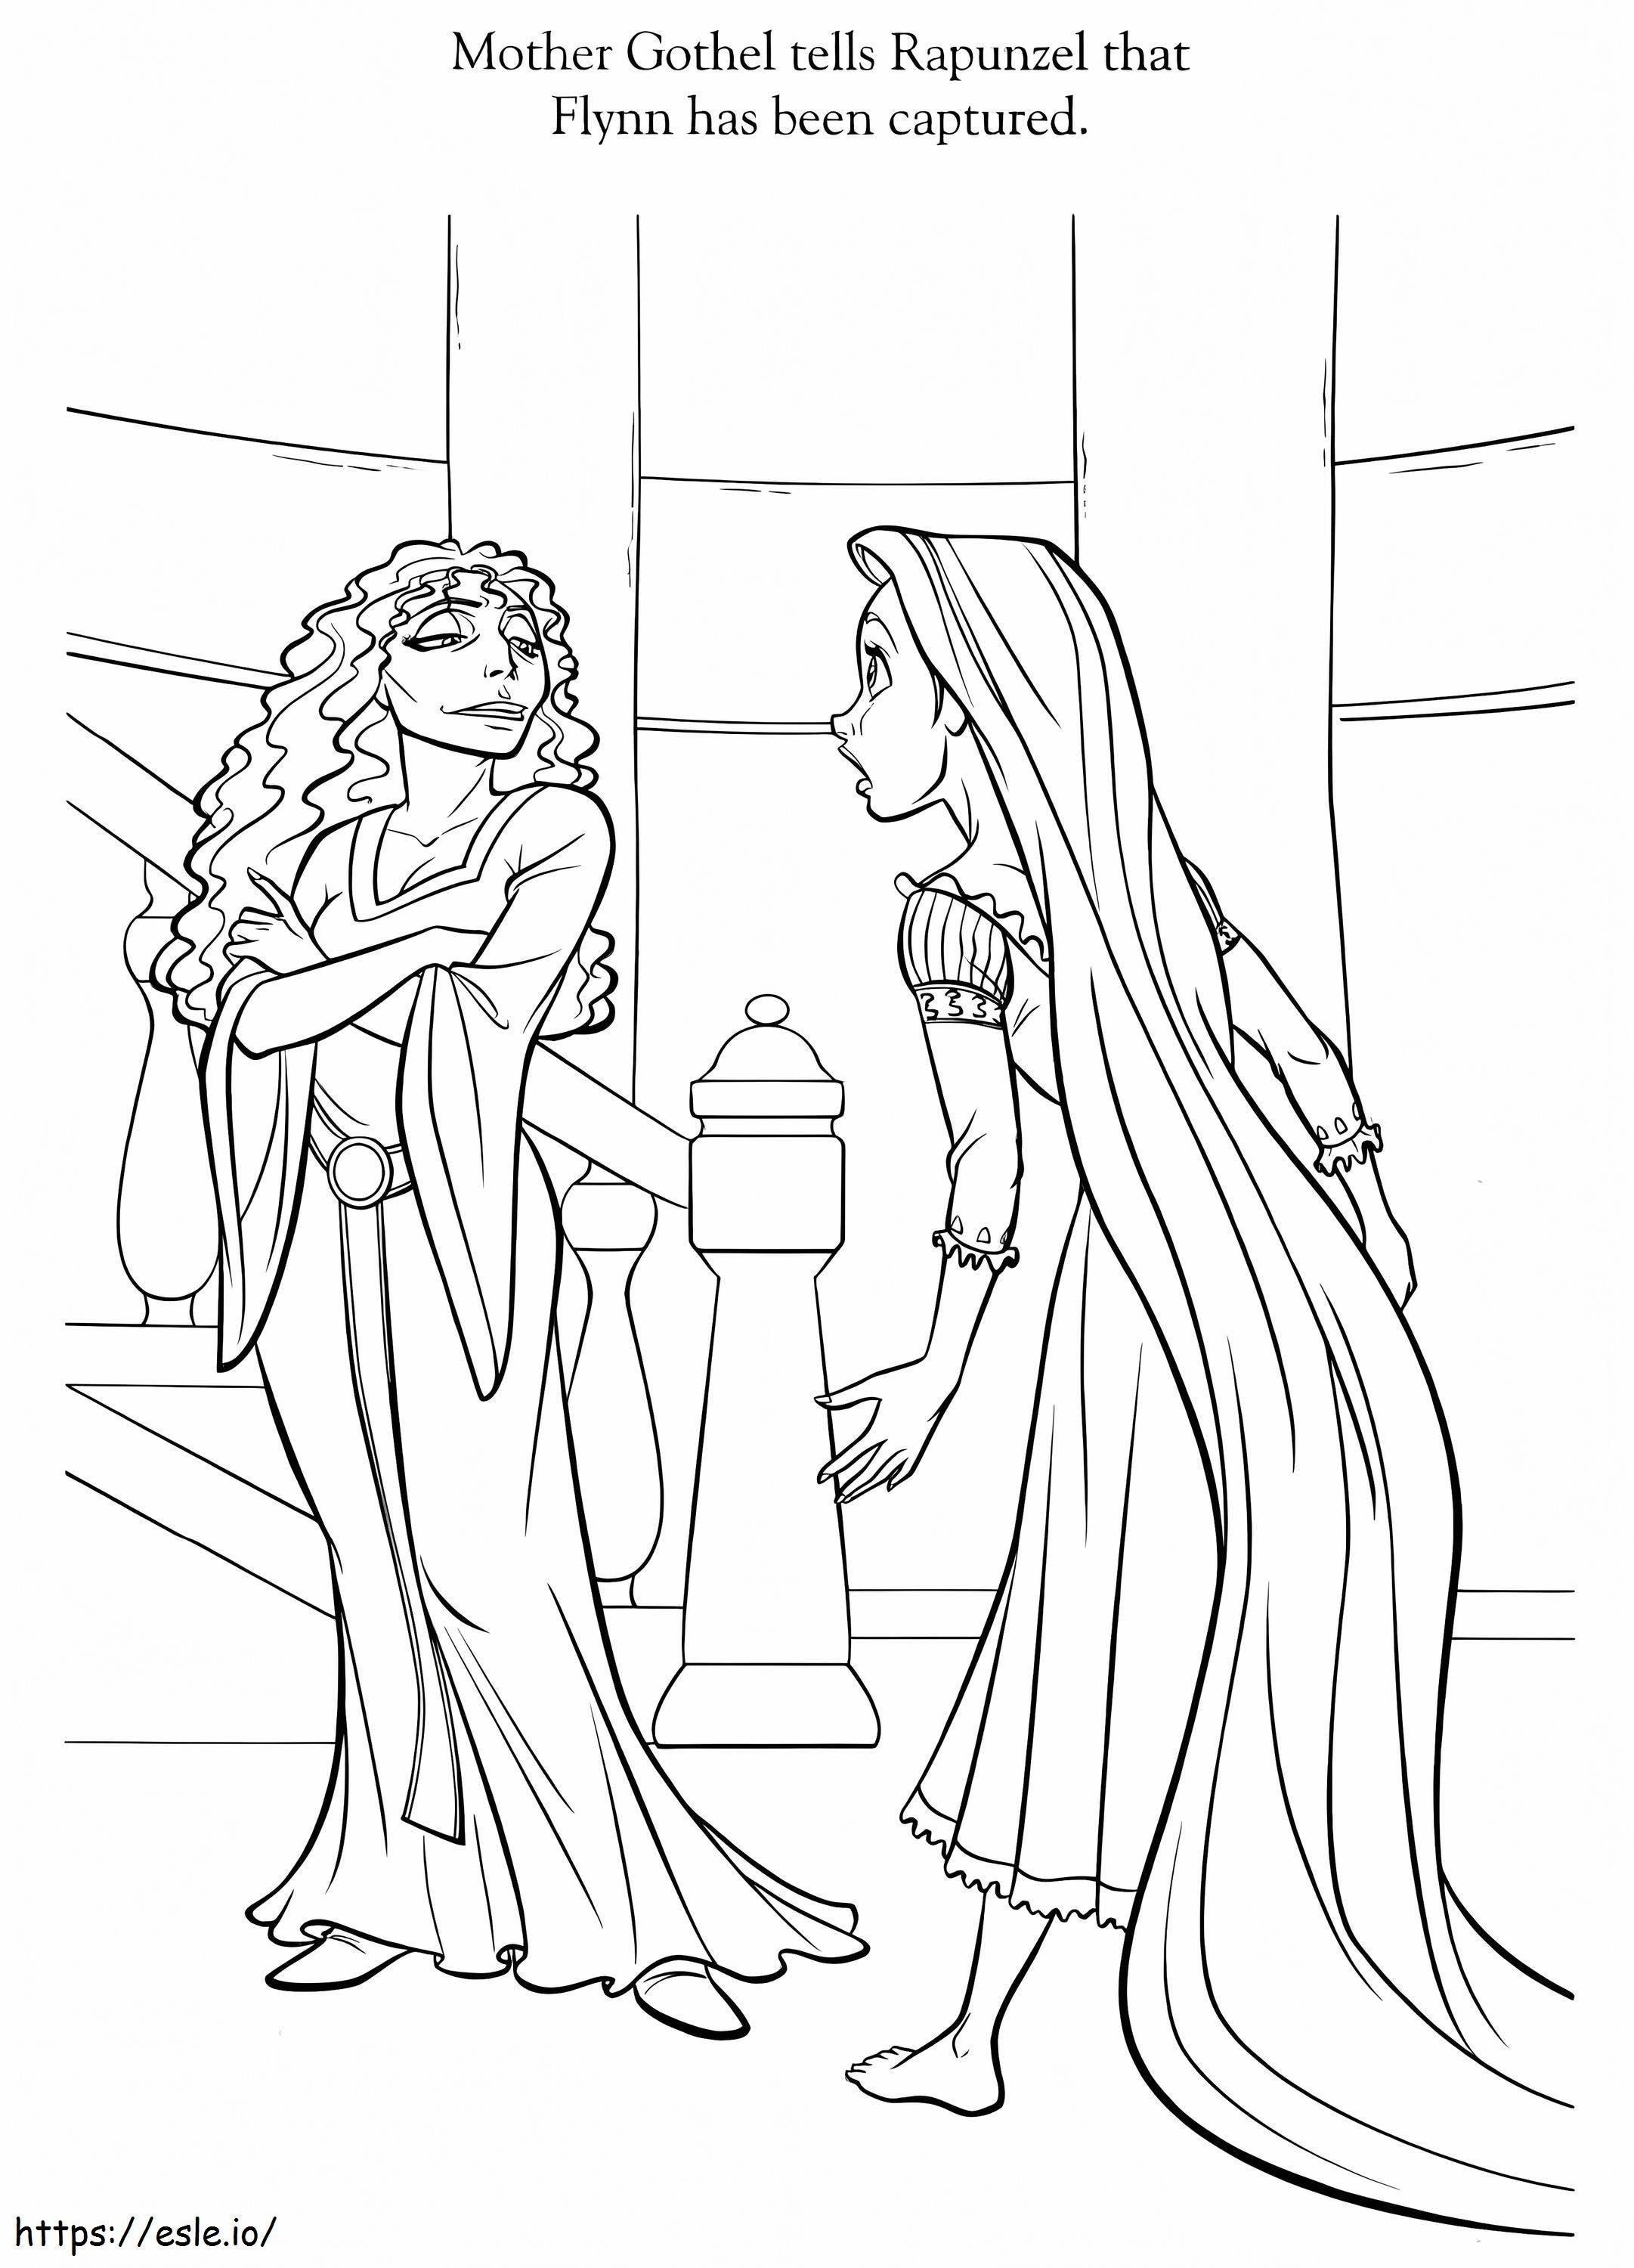 La principessa Rapunzel e la madre Gothel da colorare